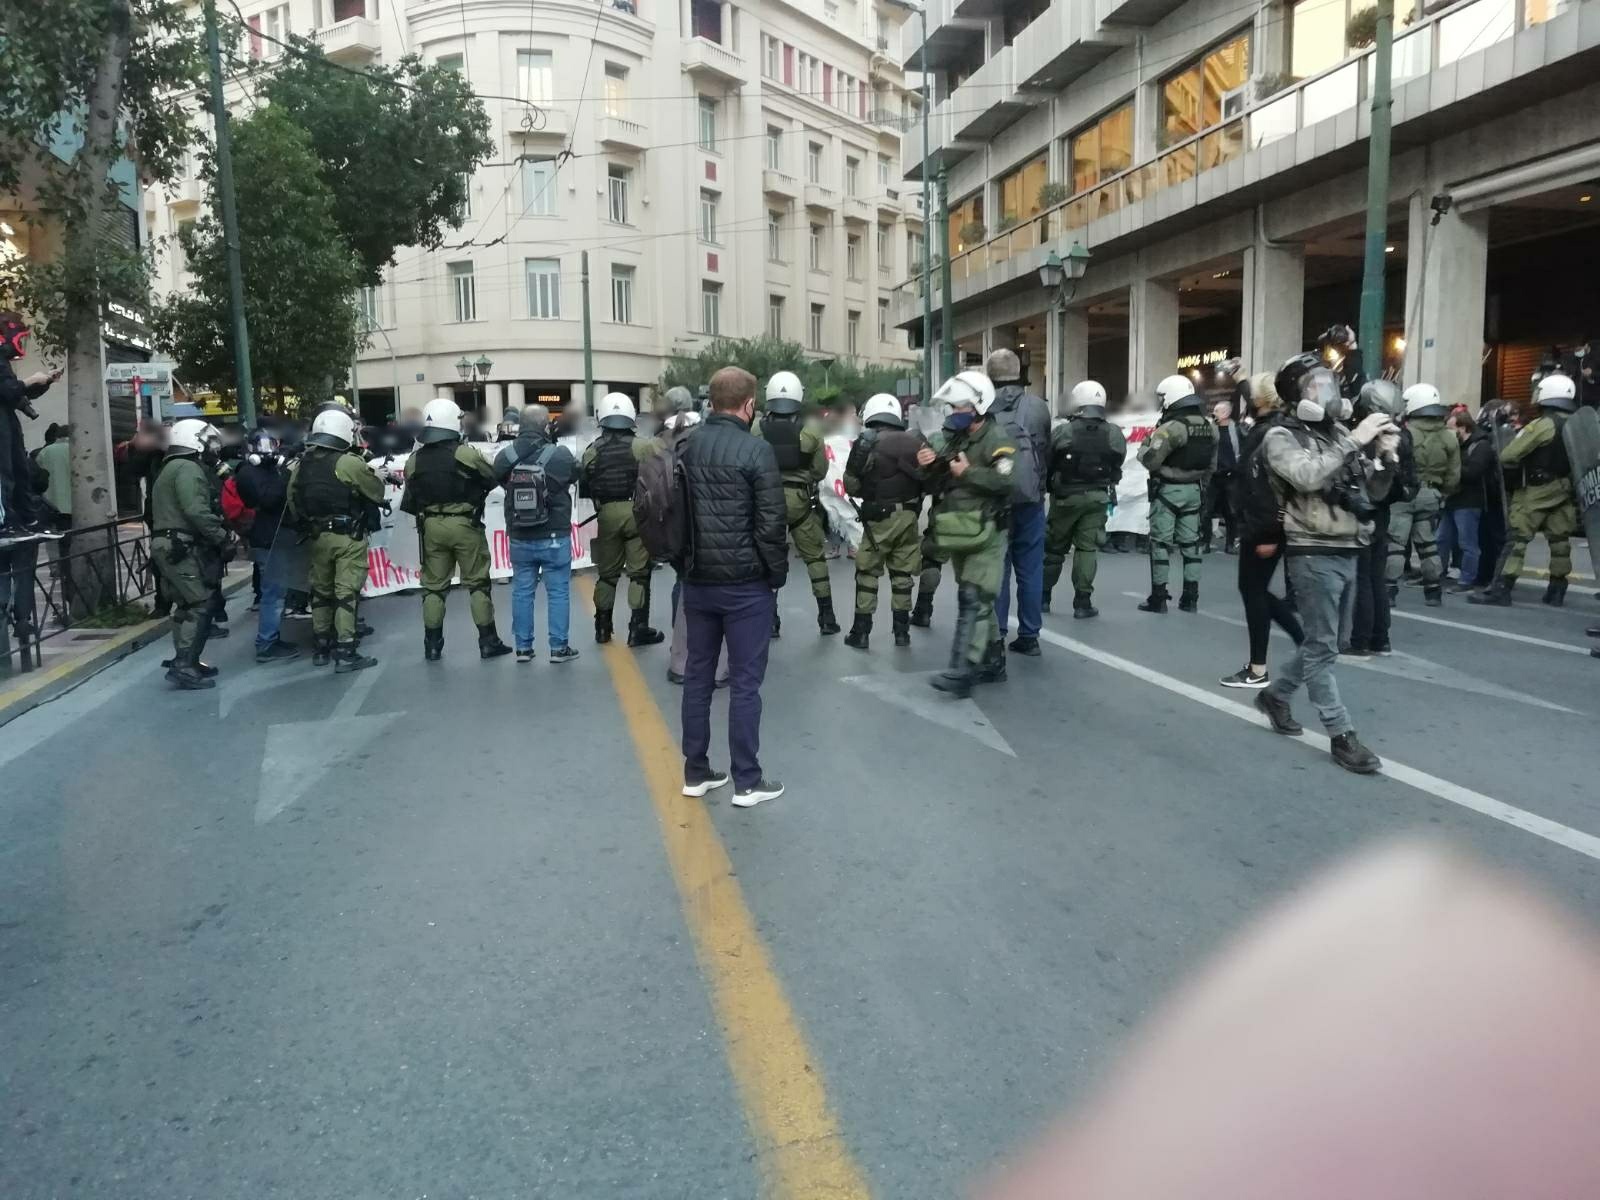 Ο Κουφοντίνας σε κρίσιμη κατάσταση – Άγρια καταστολή στην Αθήνα και διαδηλώσεις σε πολλές πόλεις (photo & video)